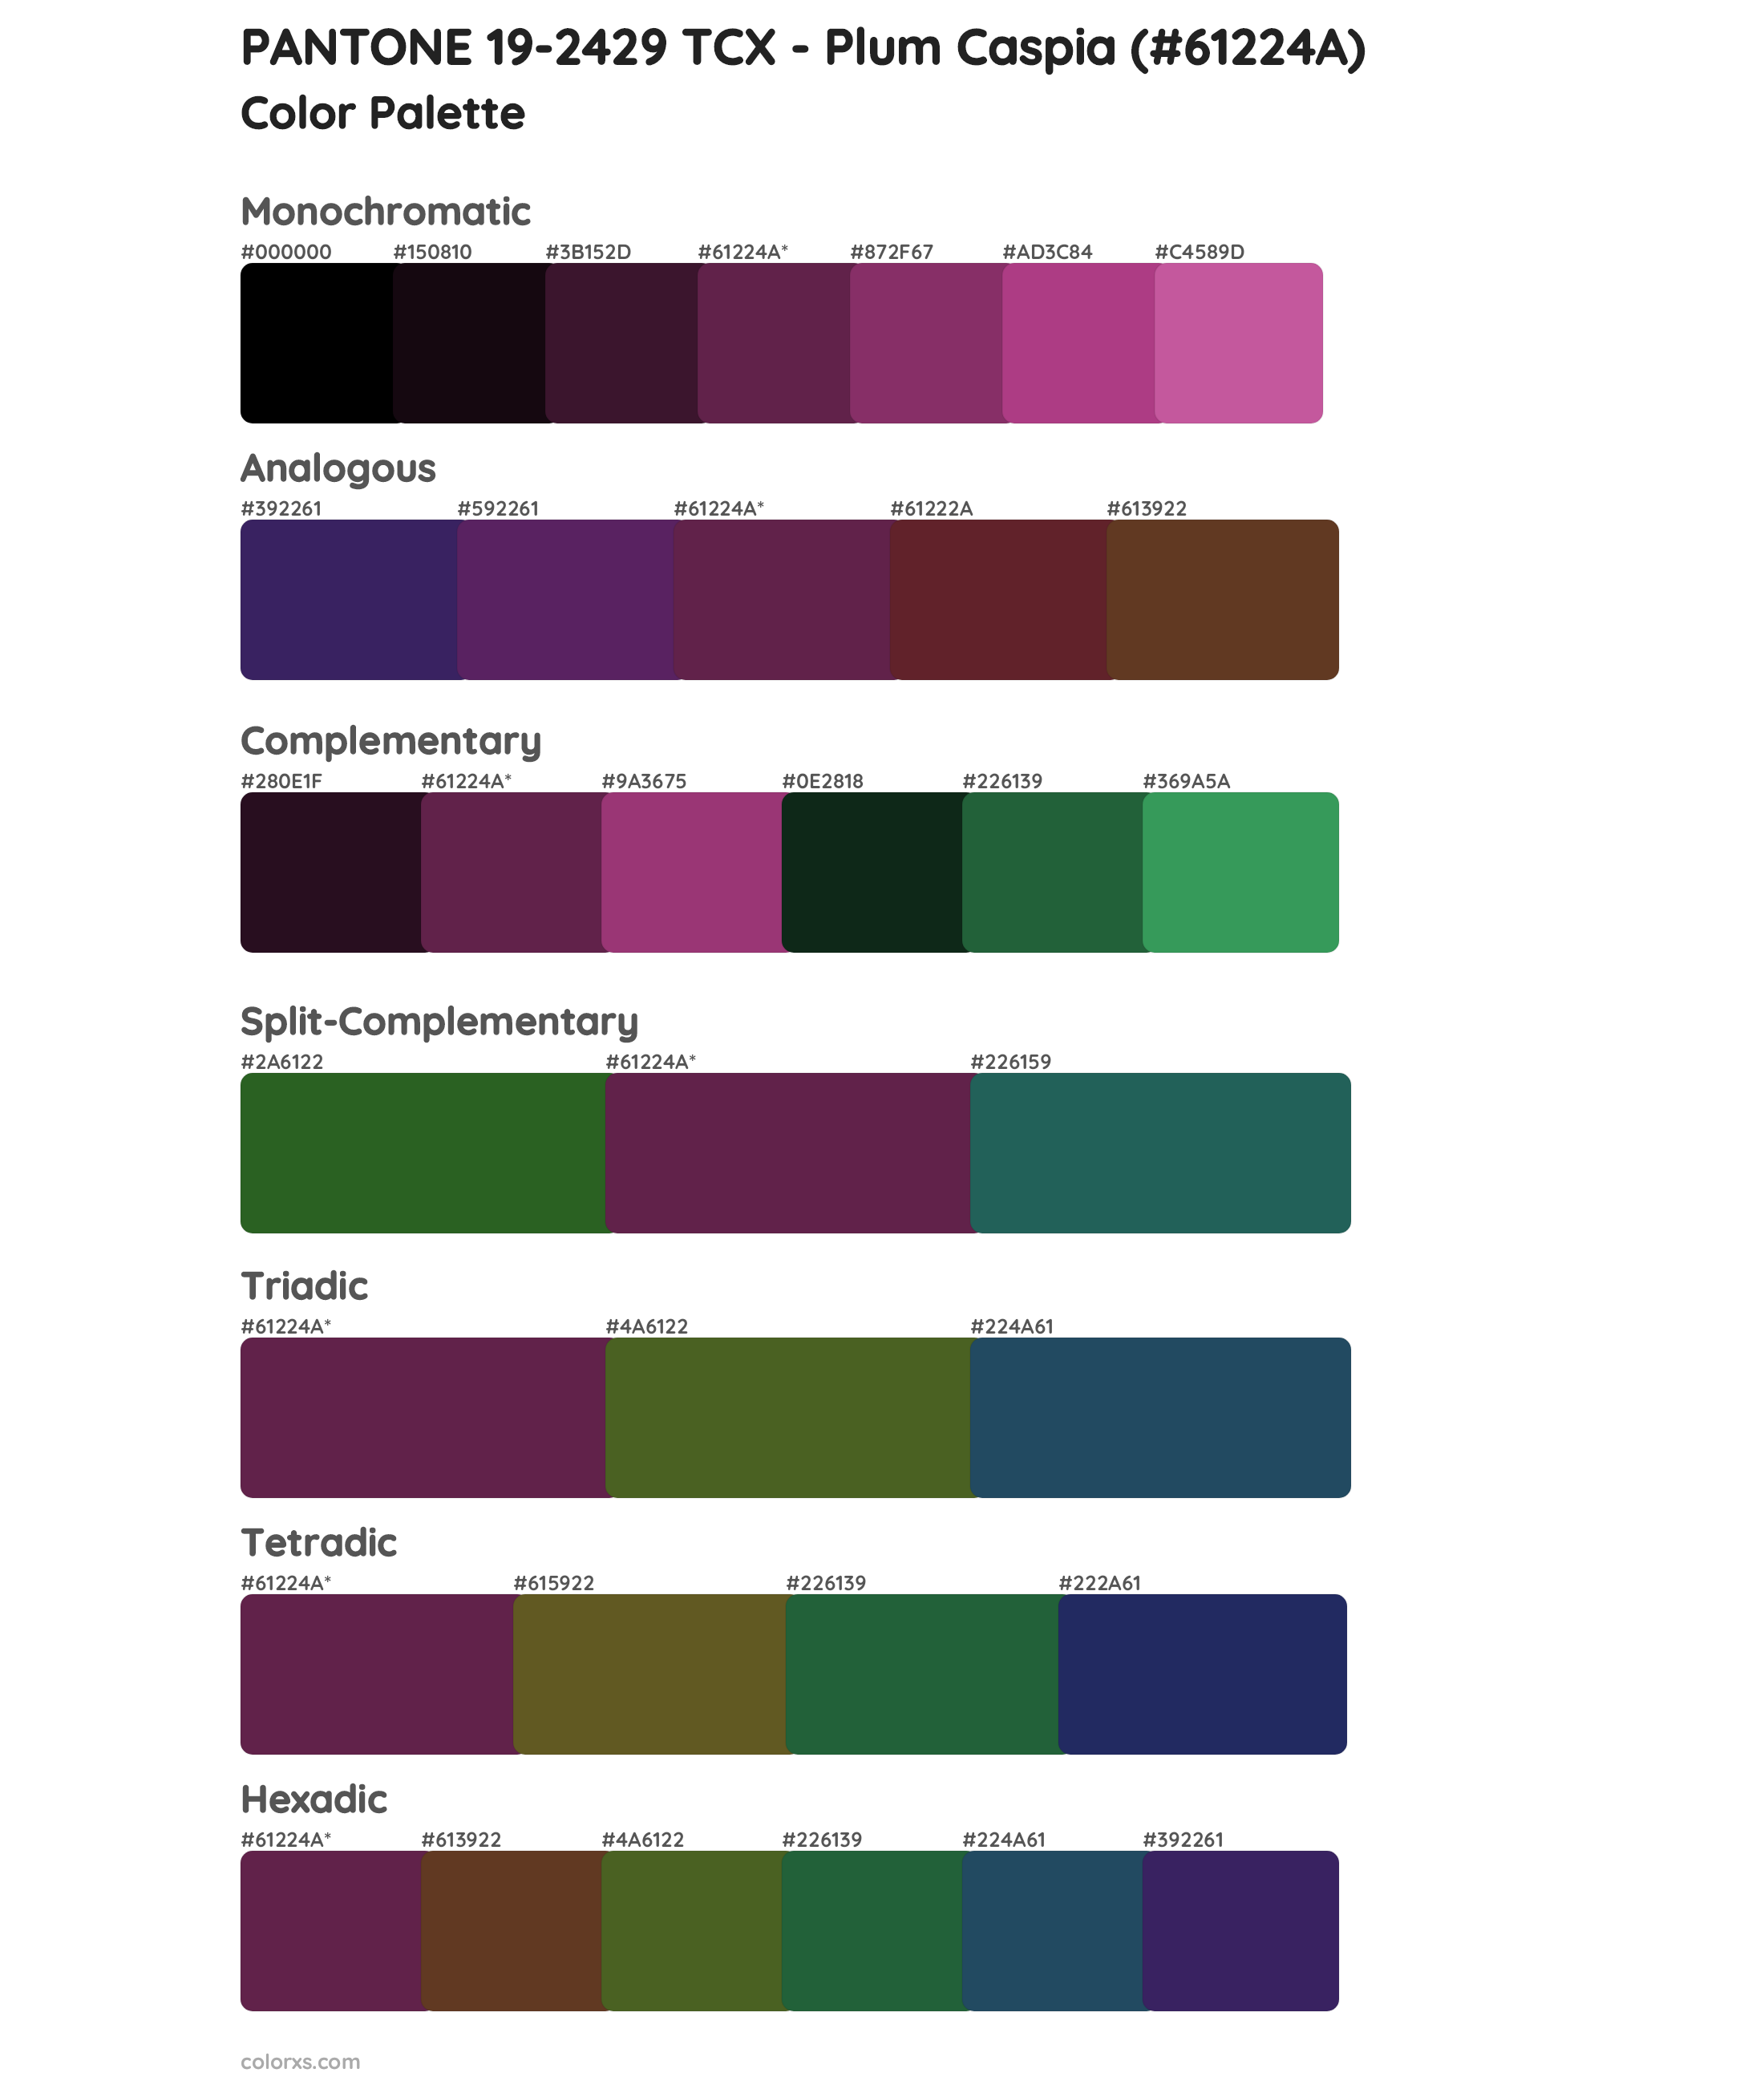 PANTONE 19-2429 TCX - Plum Caspia Color Scheme Palettes